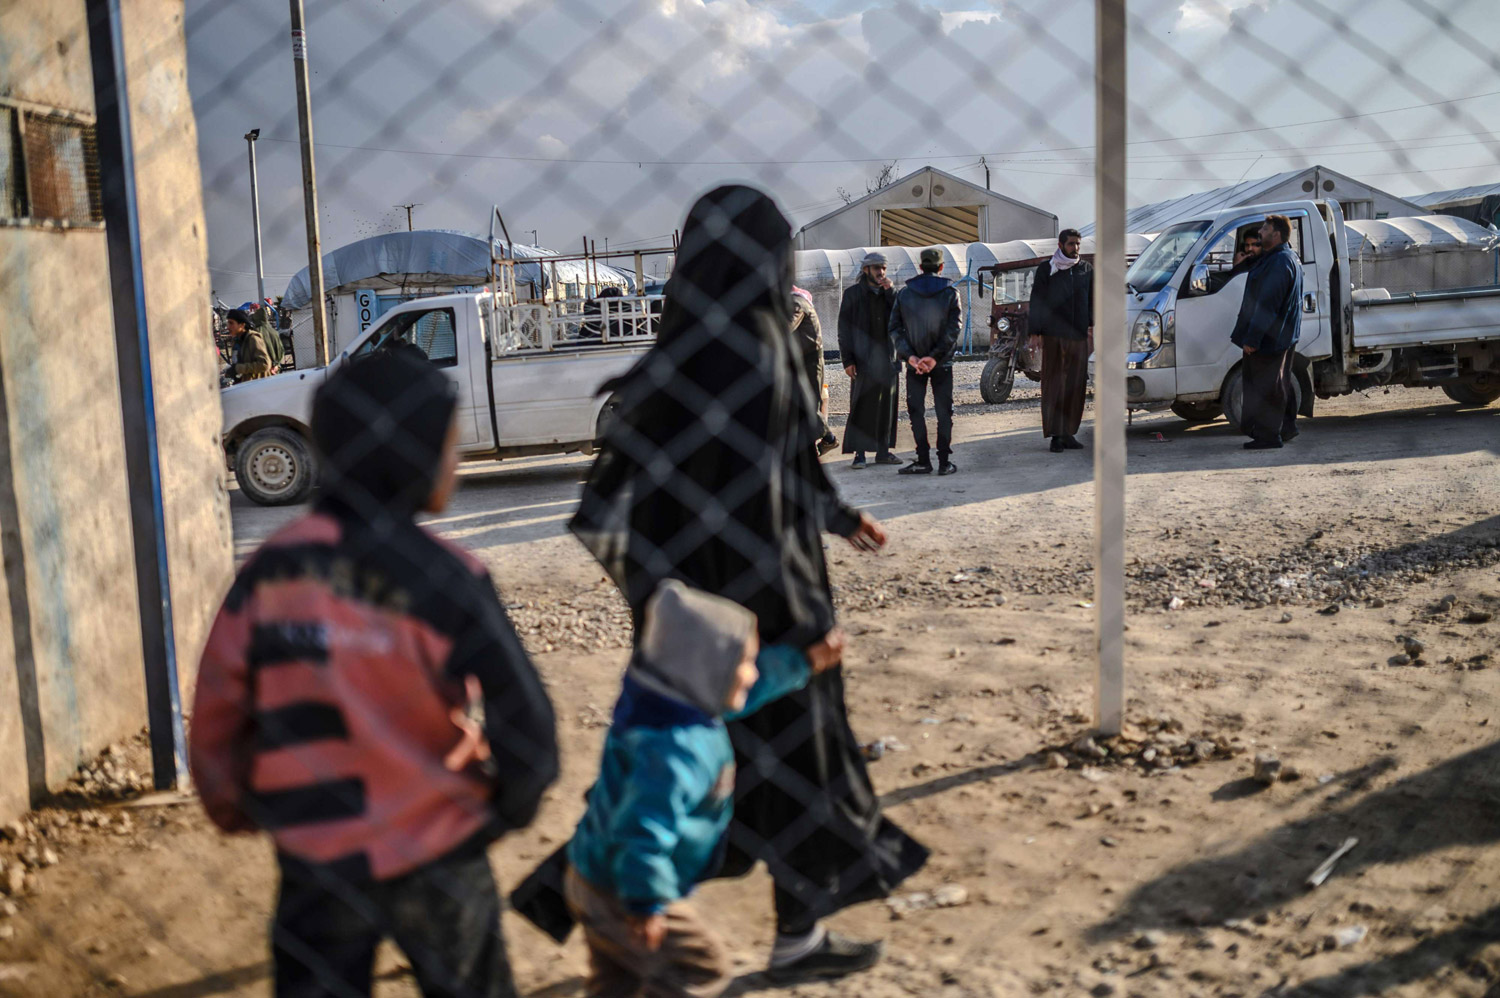 فرنسا أعادت 28 طفلاً من سوريا منذ انهيار داعش في مارس 2019